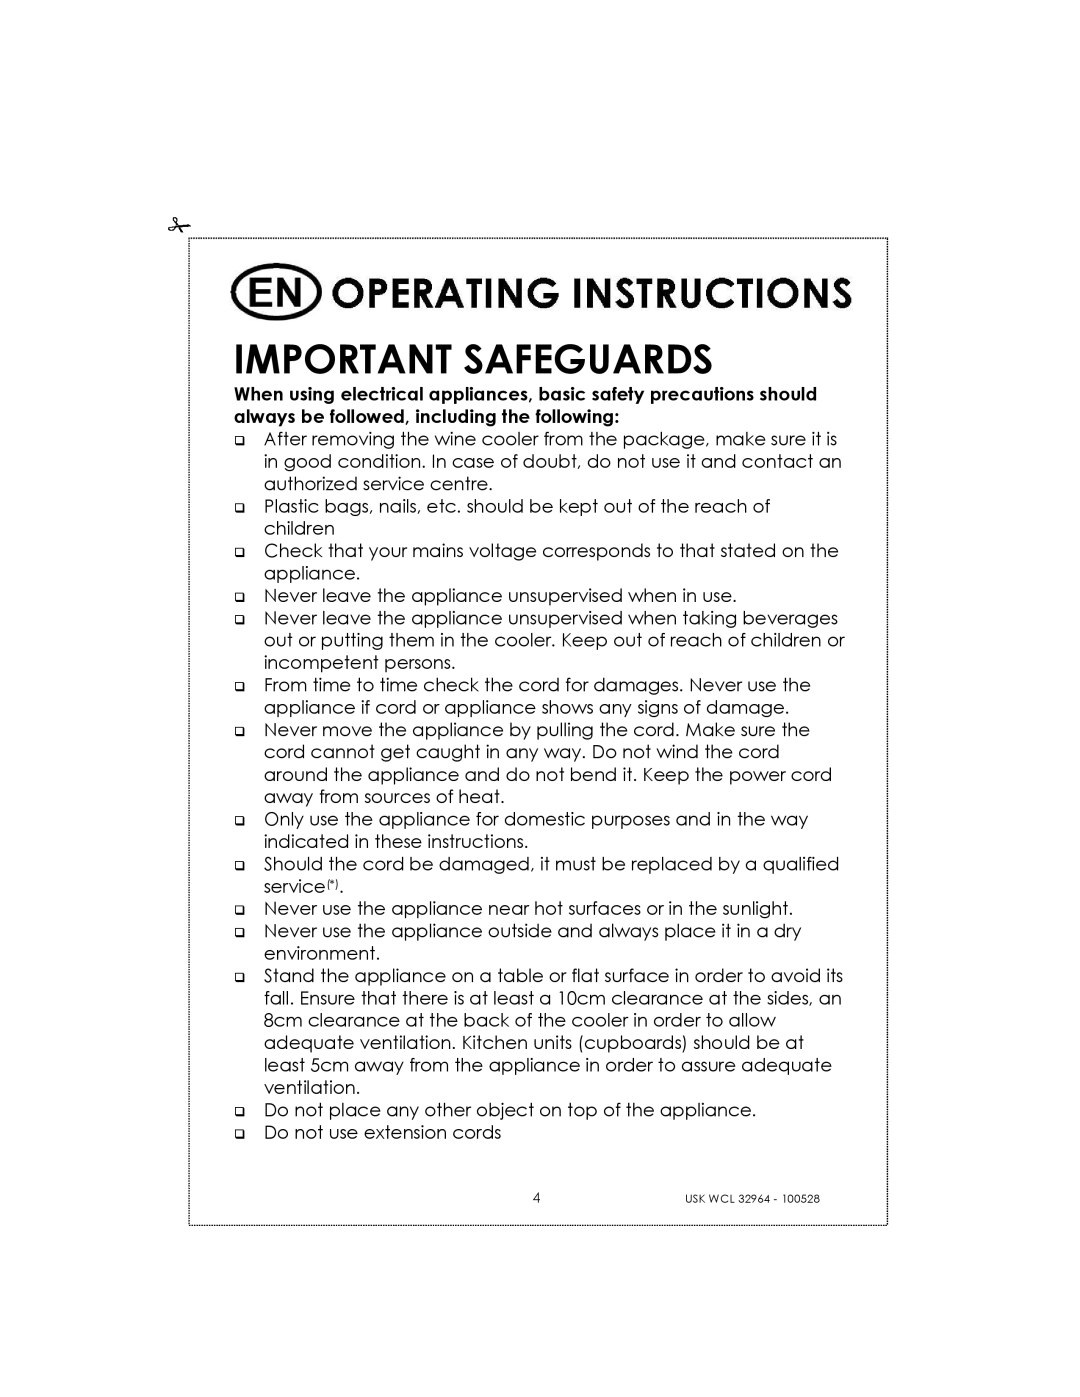 Kalorik USK WCL 32964 manual Important Safeguards 